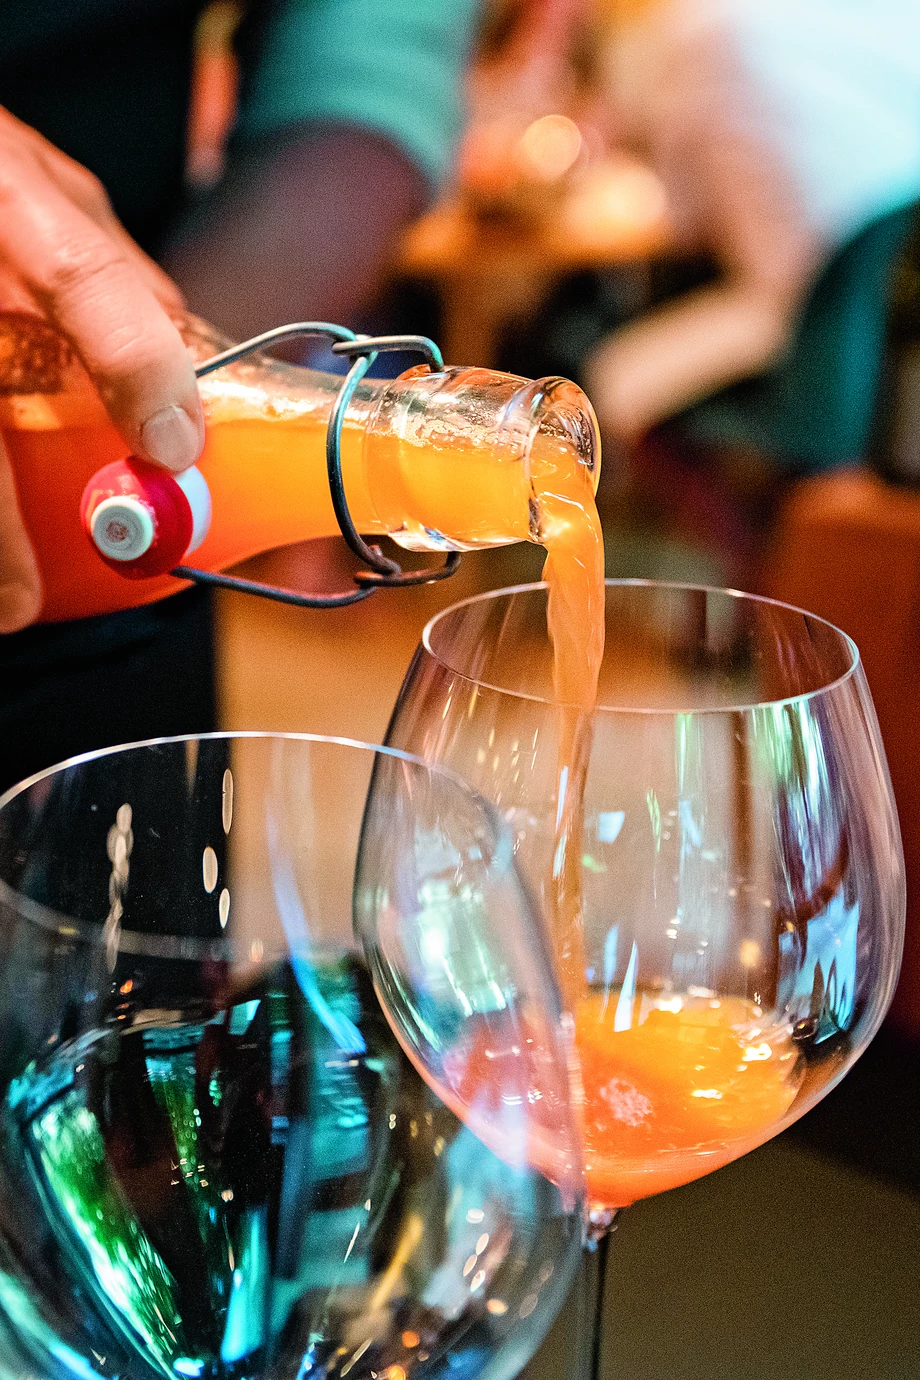 Plastik nie jest mile widziany – w zrównoważonej restauracji soki i napoje przygotowywane są na miejscu i przechowywane w szklanych butelkach.